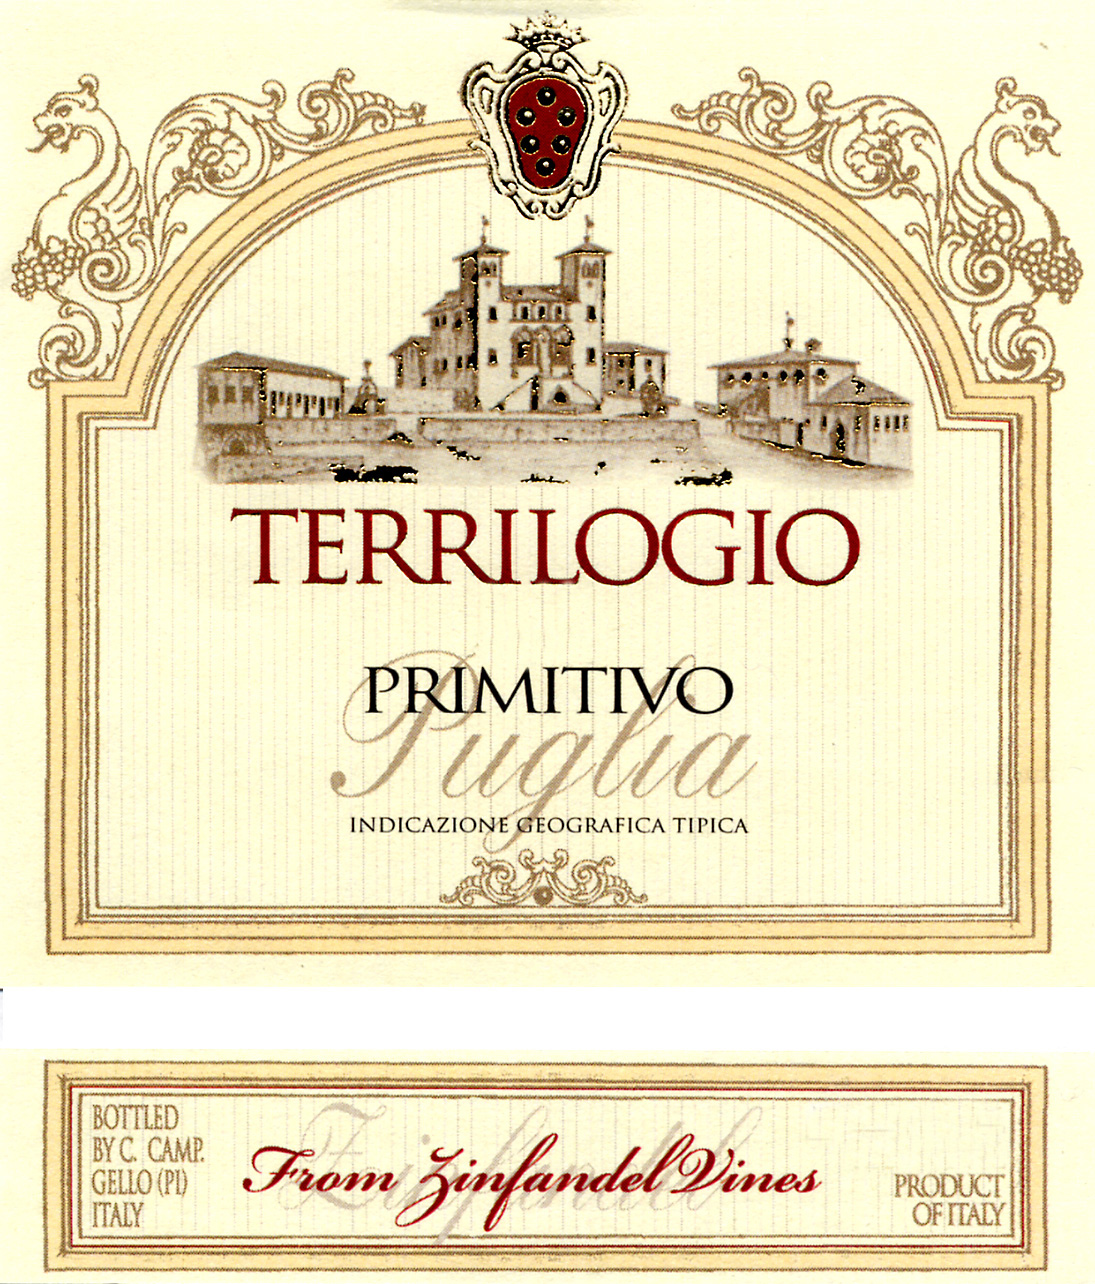 Terrilogio - Primitivo label